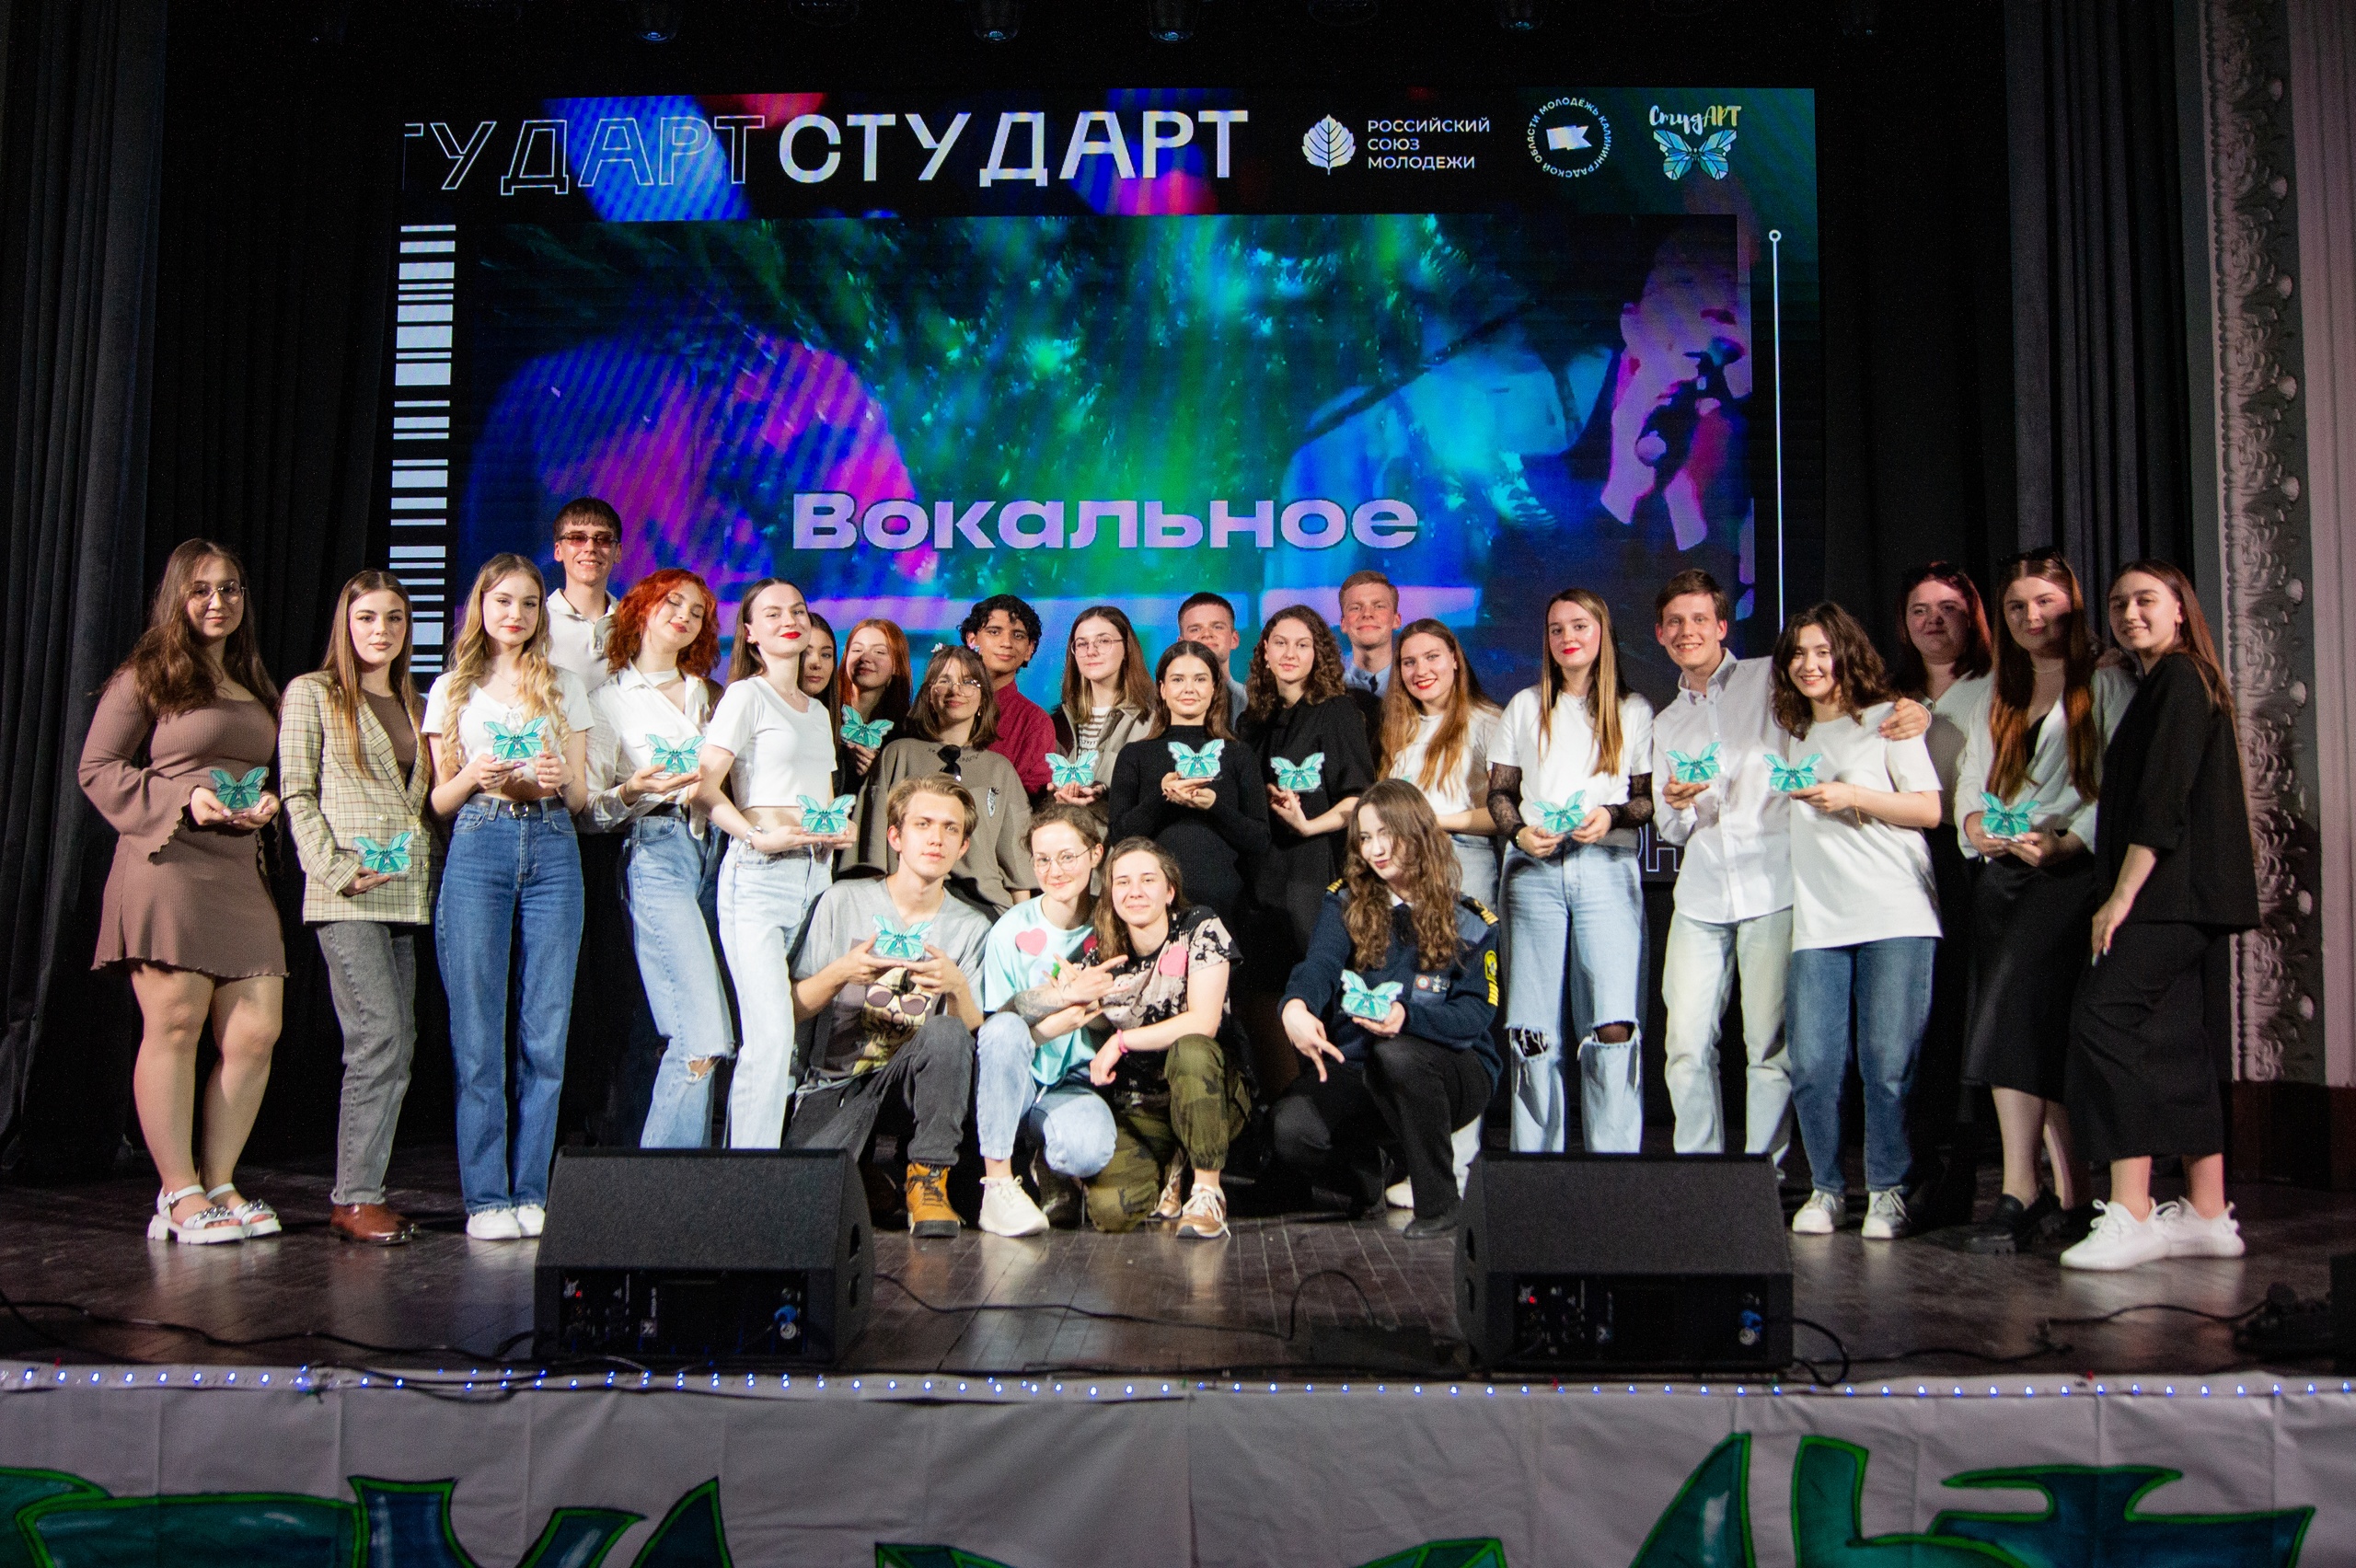  В Калининградской области завершился XV фестиваль творчества студенческой молодёжи «СтудАРТ»